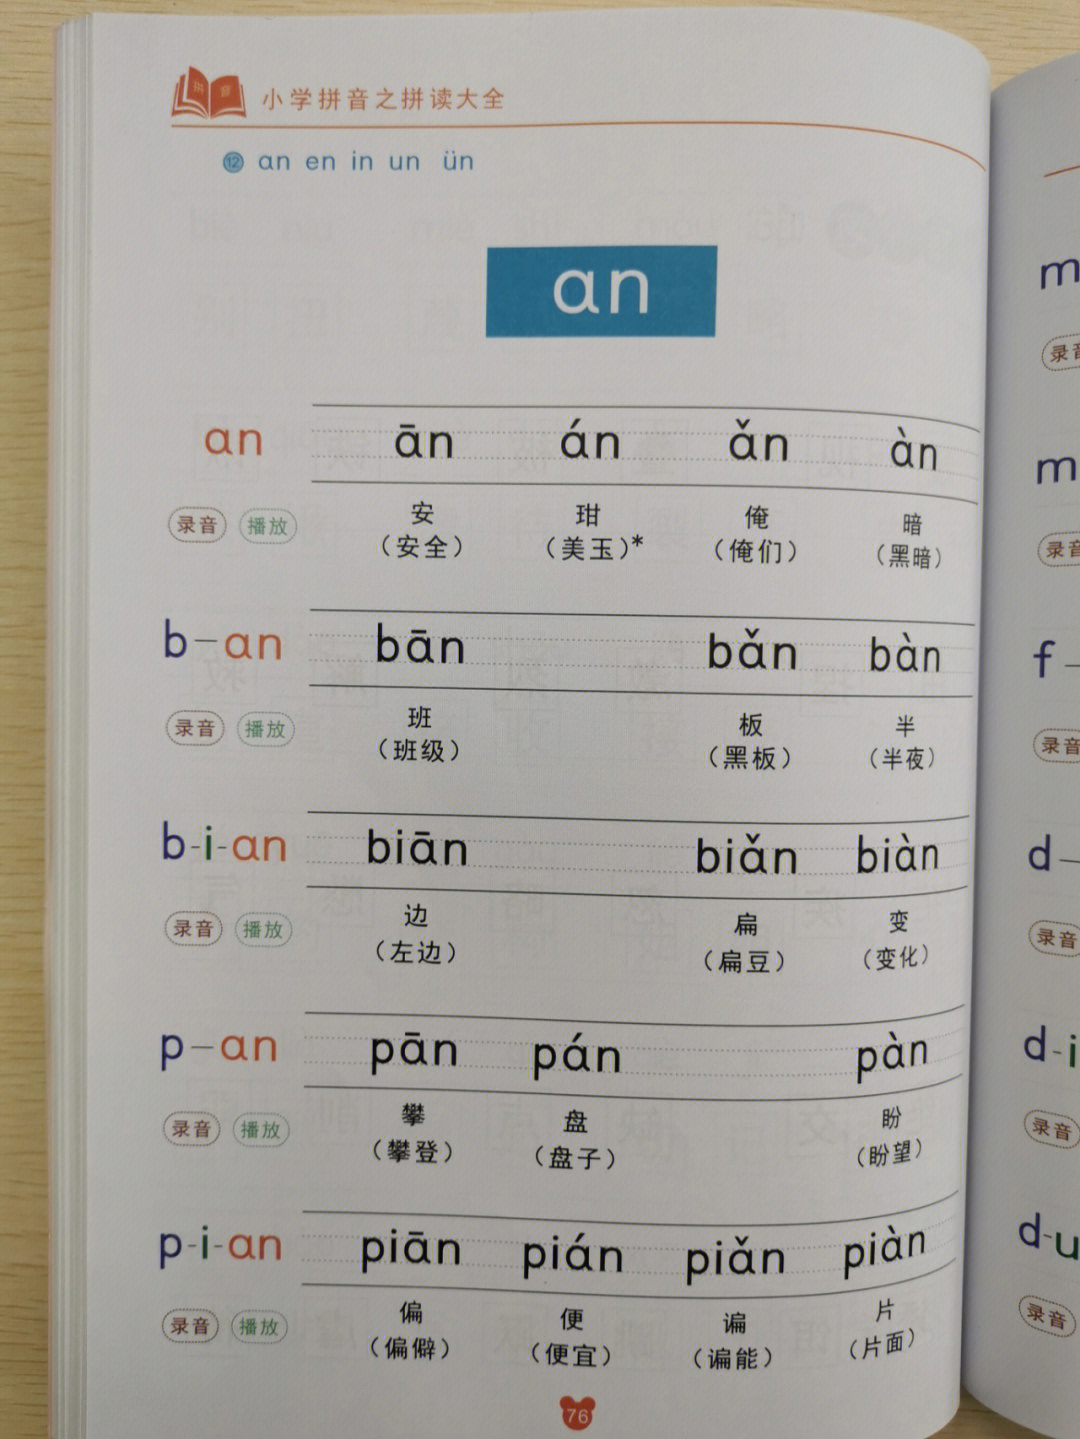 这是这本书中关于拼音an的所有拼读